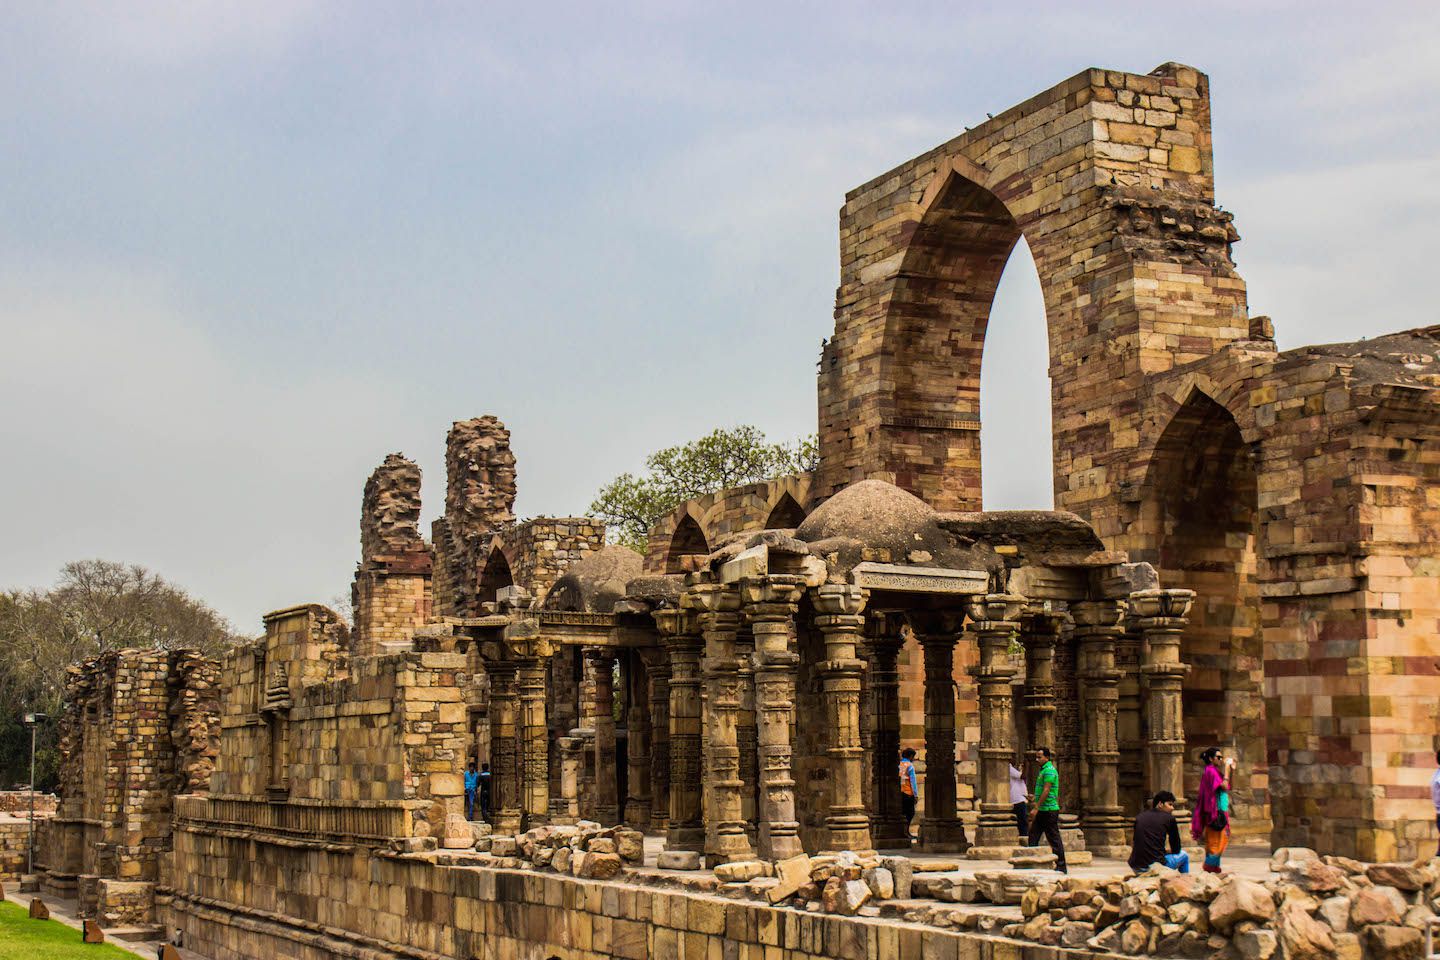 Ruins at Qutb Minar, New Delhi, India